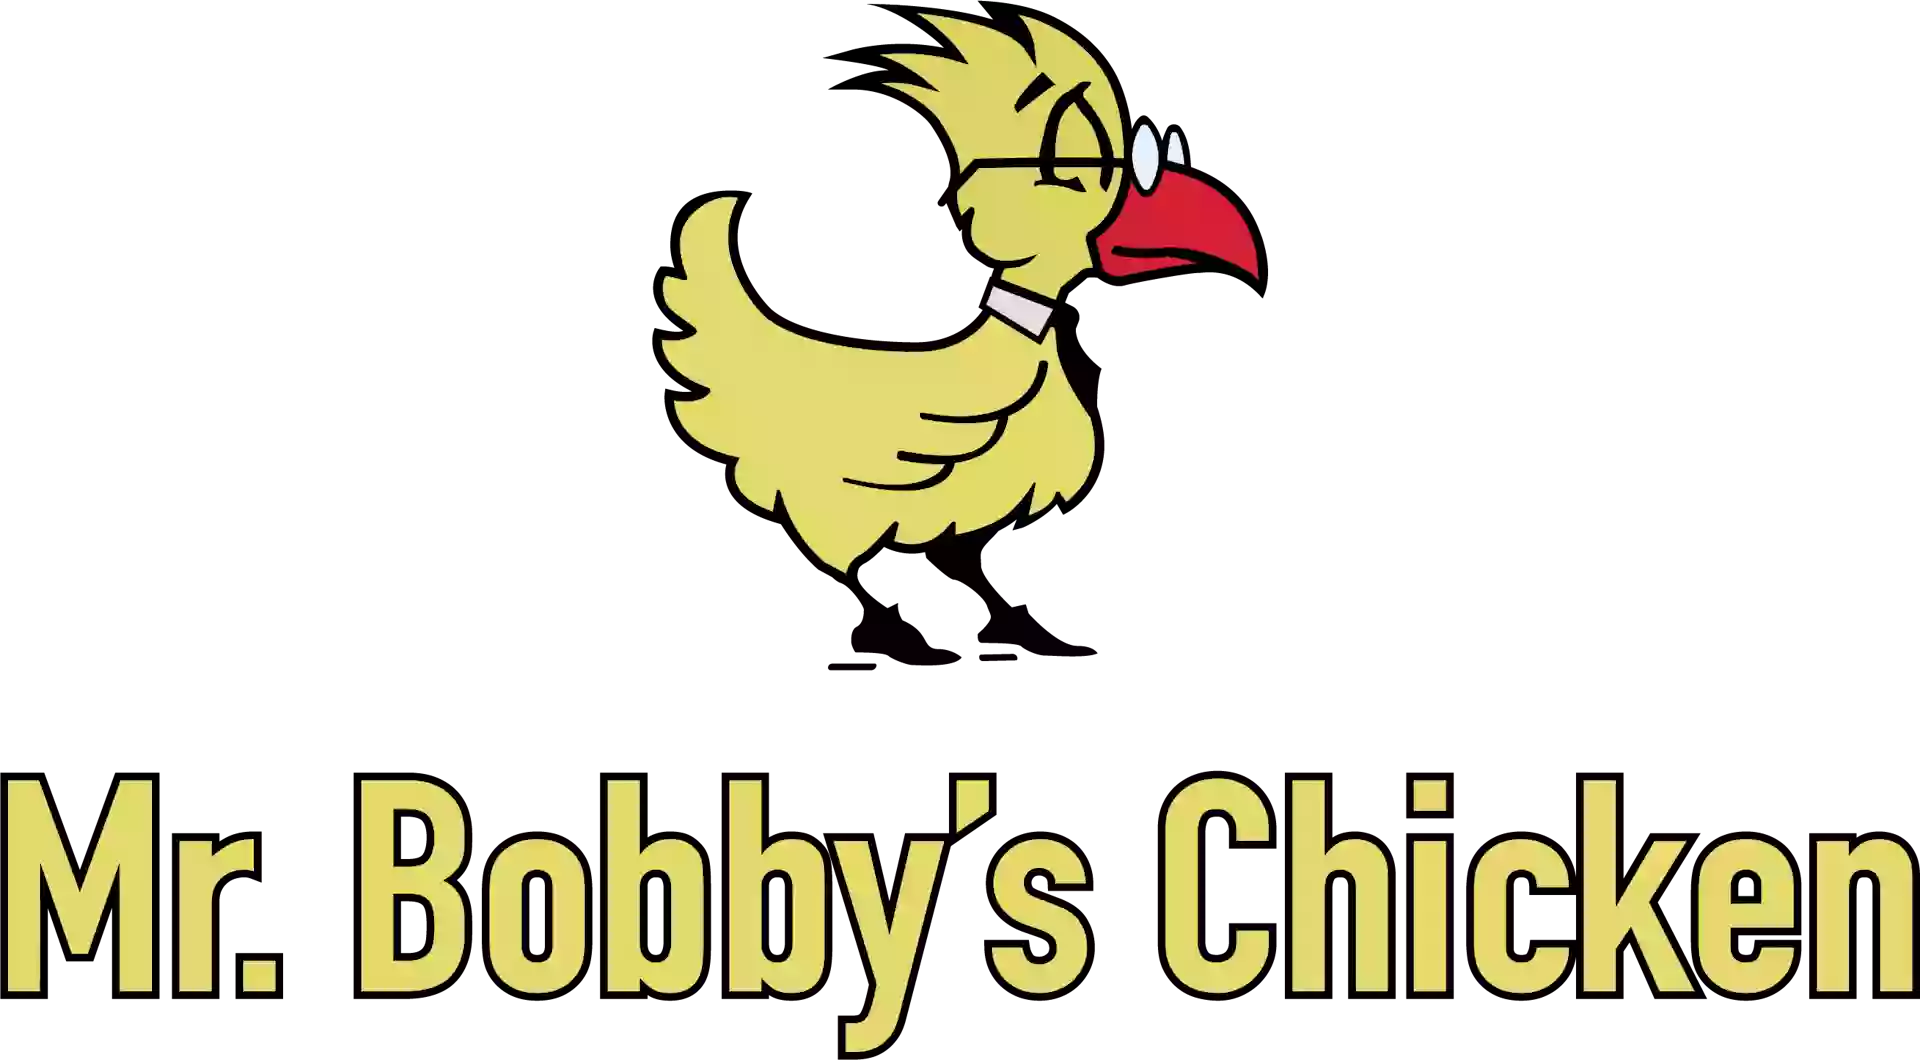 Bobby's Chicken